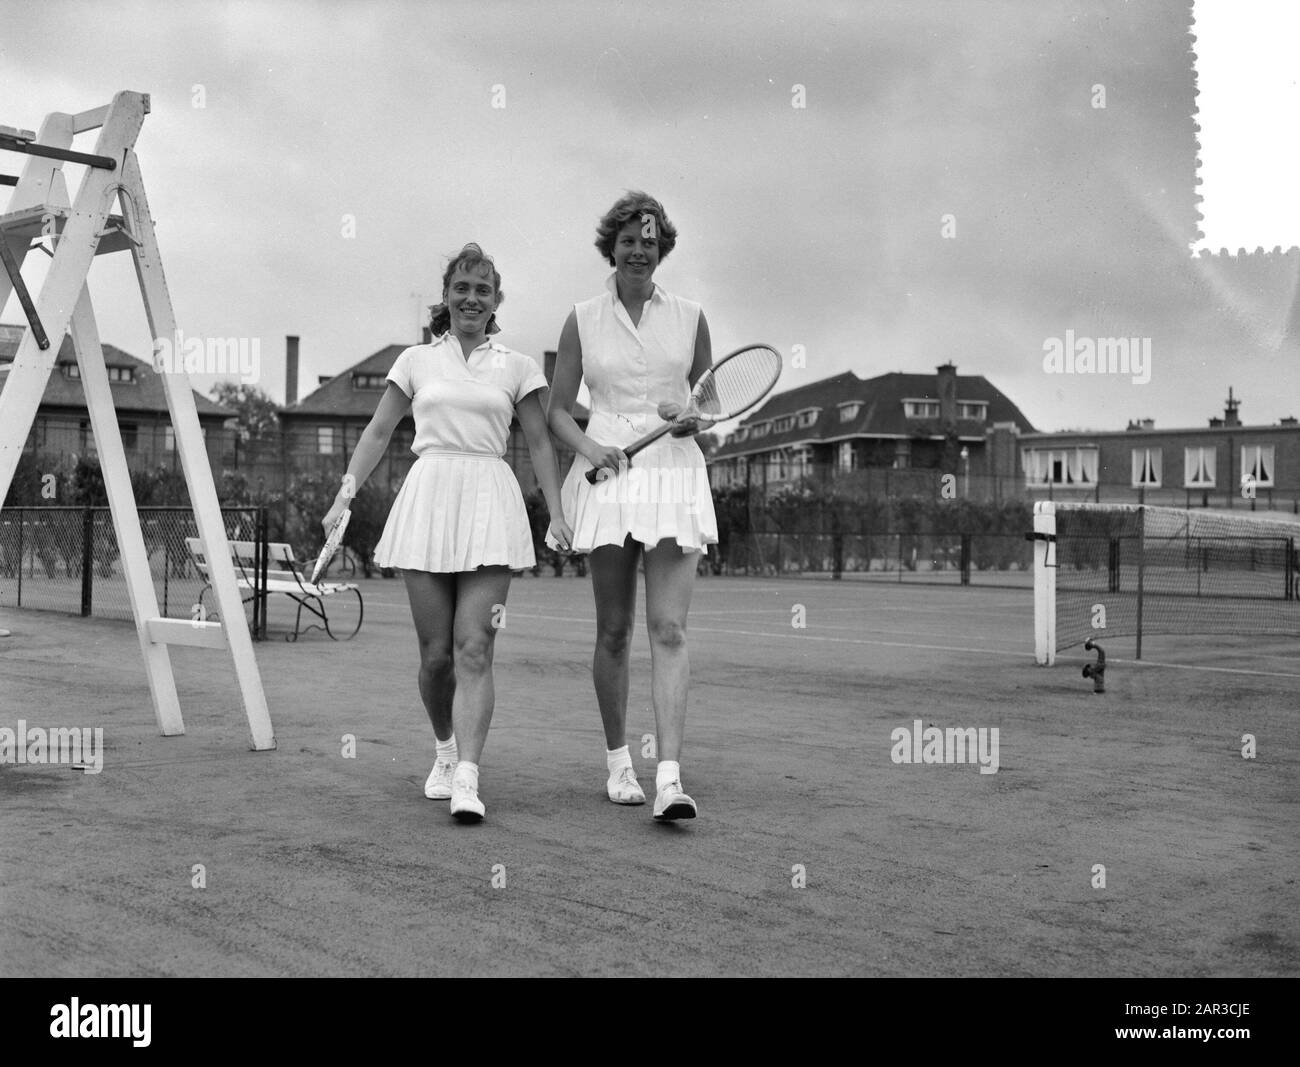 Niederländische Tennisweltmeisterschaften UETS-Courts. Frau J. van Wienese (links) und mej. F. Marinkelle (rechts) Datum: 15. August 1956 Schlagwörter: Meisterschaften, Tennis Stockfoto